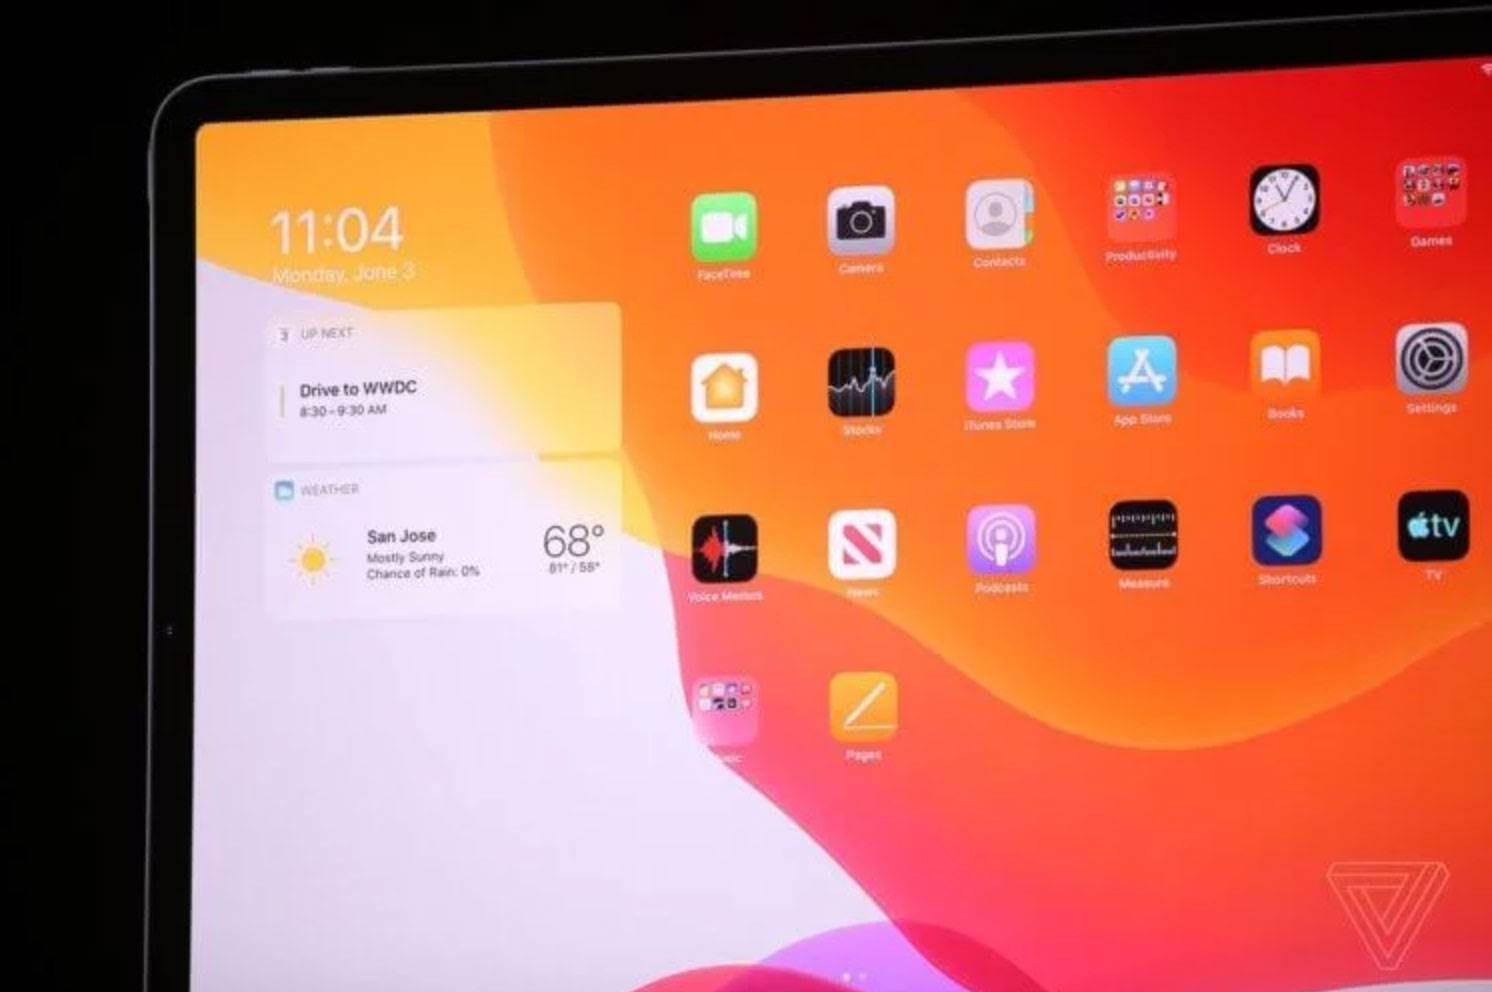 Apple przedstawiło iPadOS - system operacyjny tylko dla iPada polecane, ciekawostki iPadOS, iPad, co nowego w iPadOS 13, Apple  Wczoraj na WWDC 2019 Apple nie tylko zaprezentowało iOS 13 , ale także wprowadziło zupełnie nowy system operacyjny - iPadOS. iPadOS 4